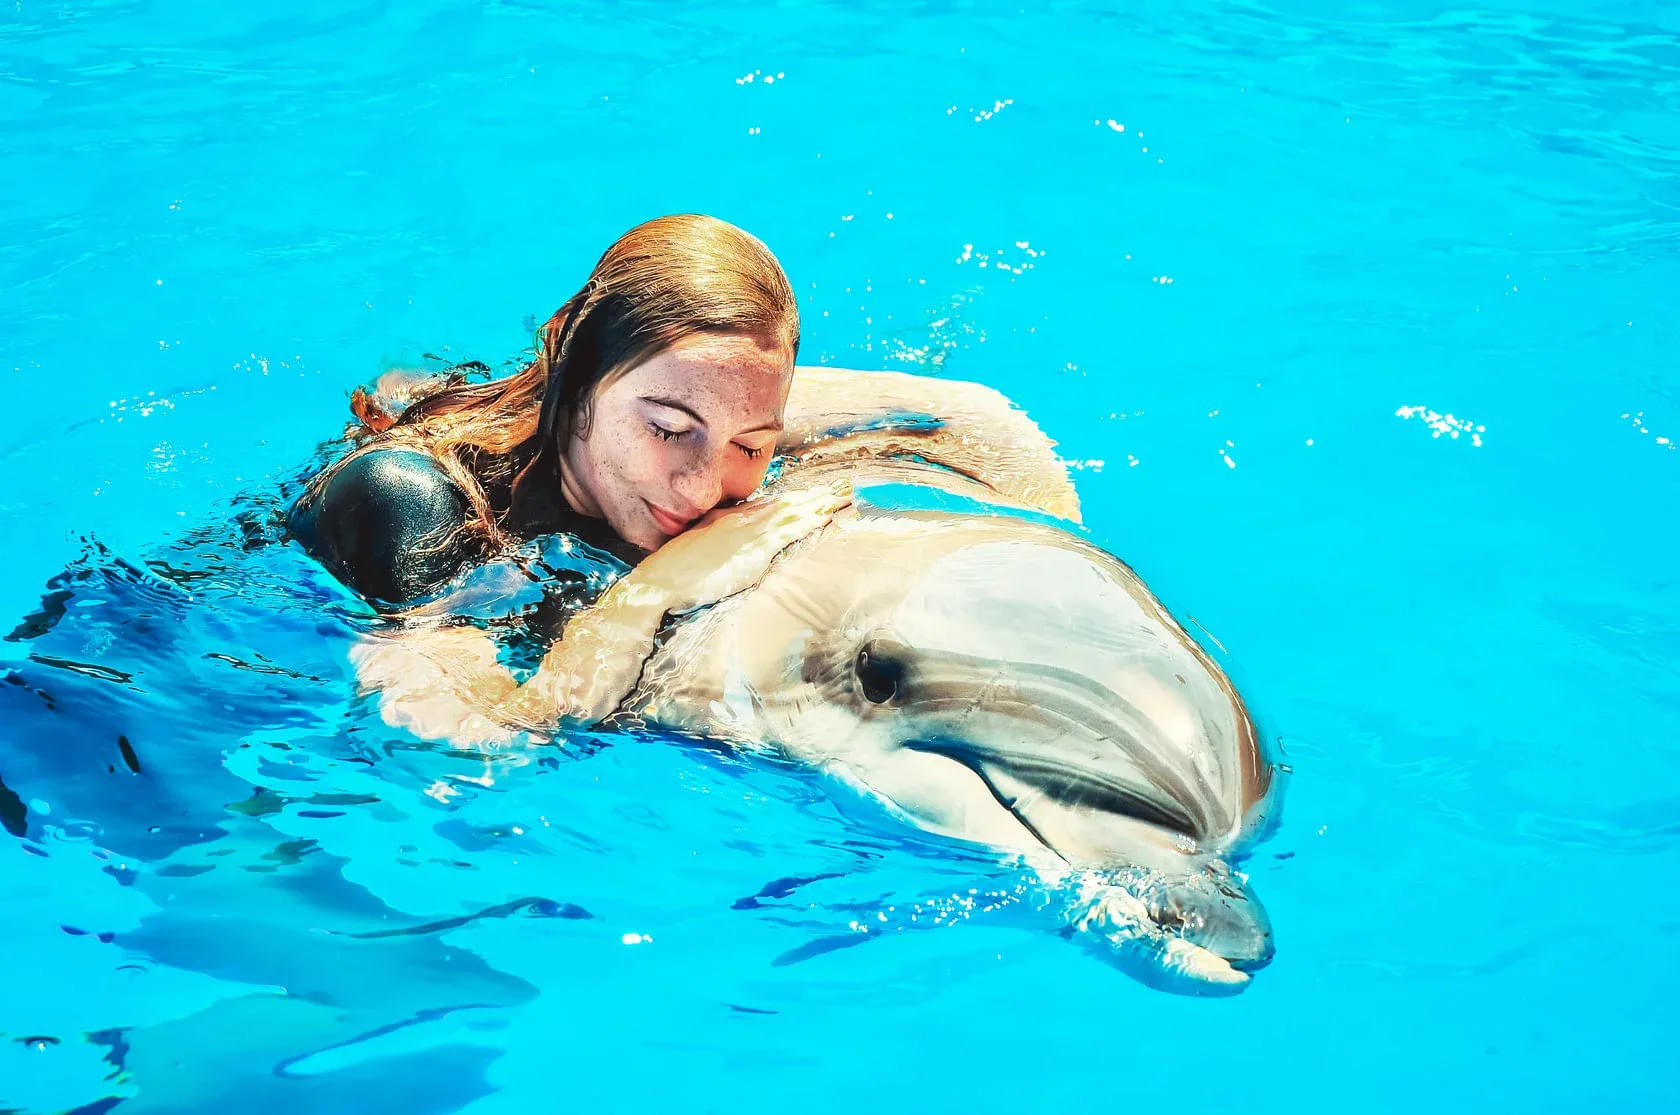 Dolphin Bay Phuket